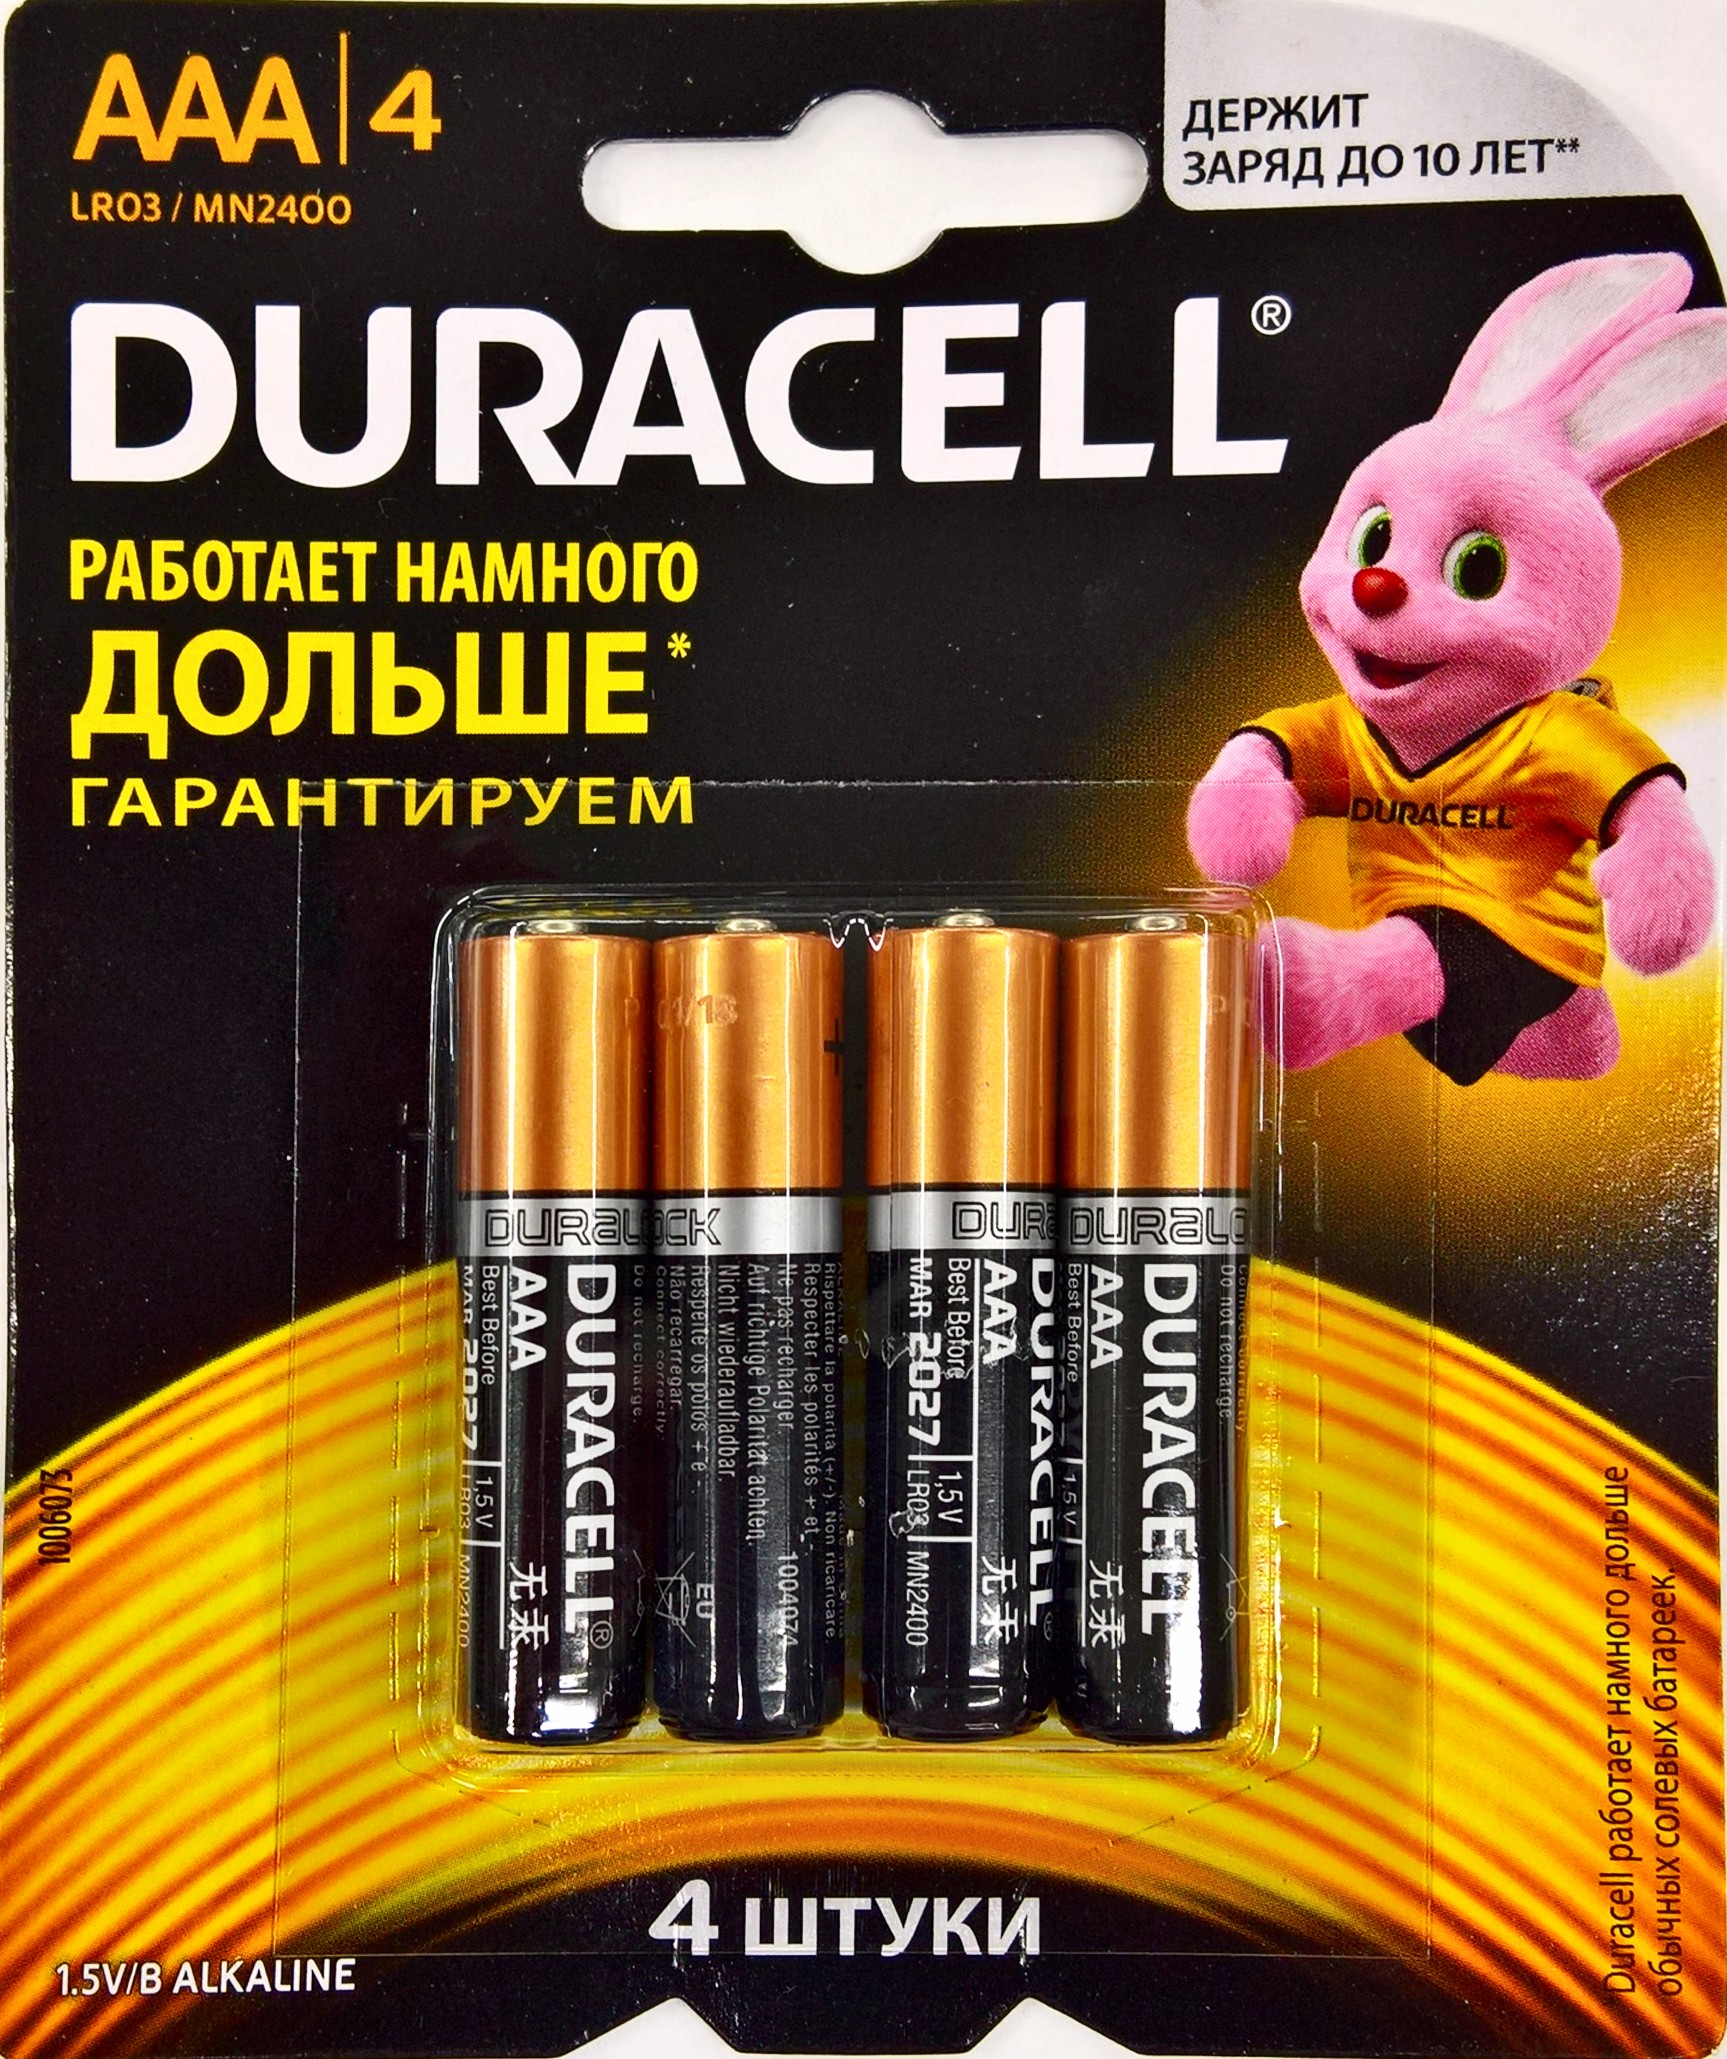 Ааа 1.5 v. Батарейка Duracell AAA lr03 1.5v. Батарейки дюраселл 3 блистер по 4шт, 12 шт ААА. Батарейки алкалиновые Duracell AAA lr3. ААА lr03 батарейки.